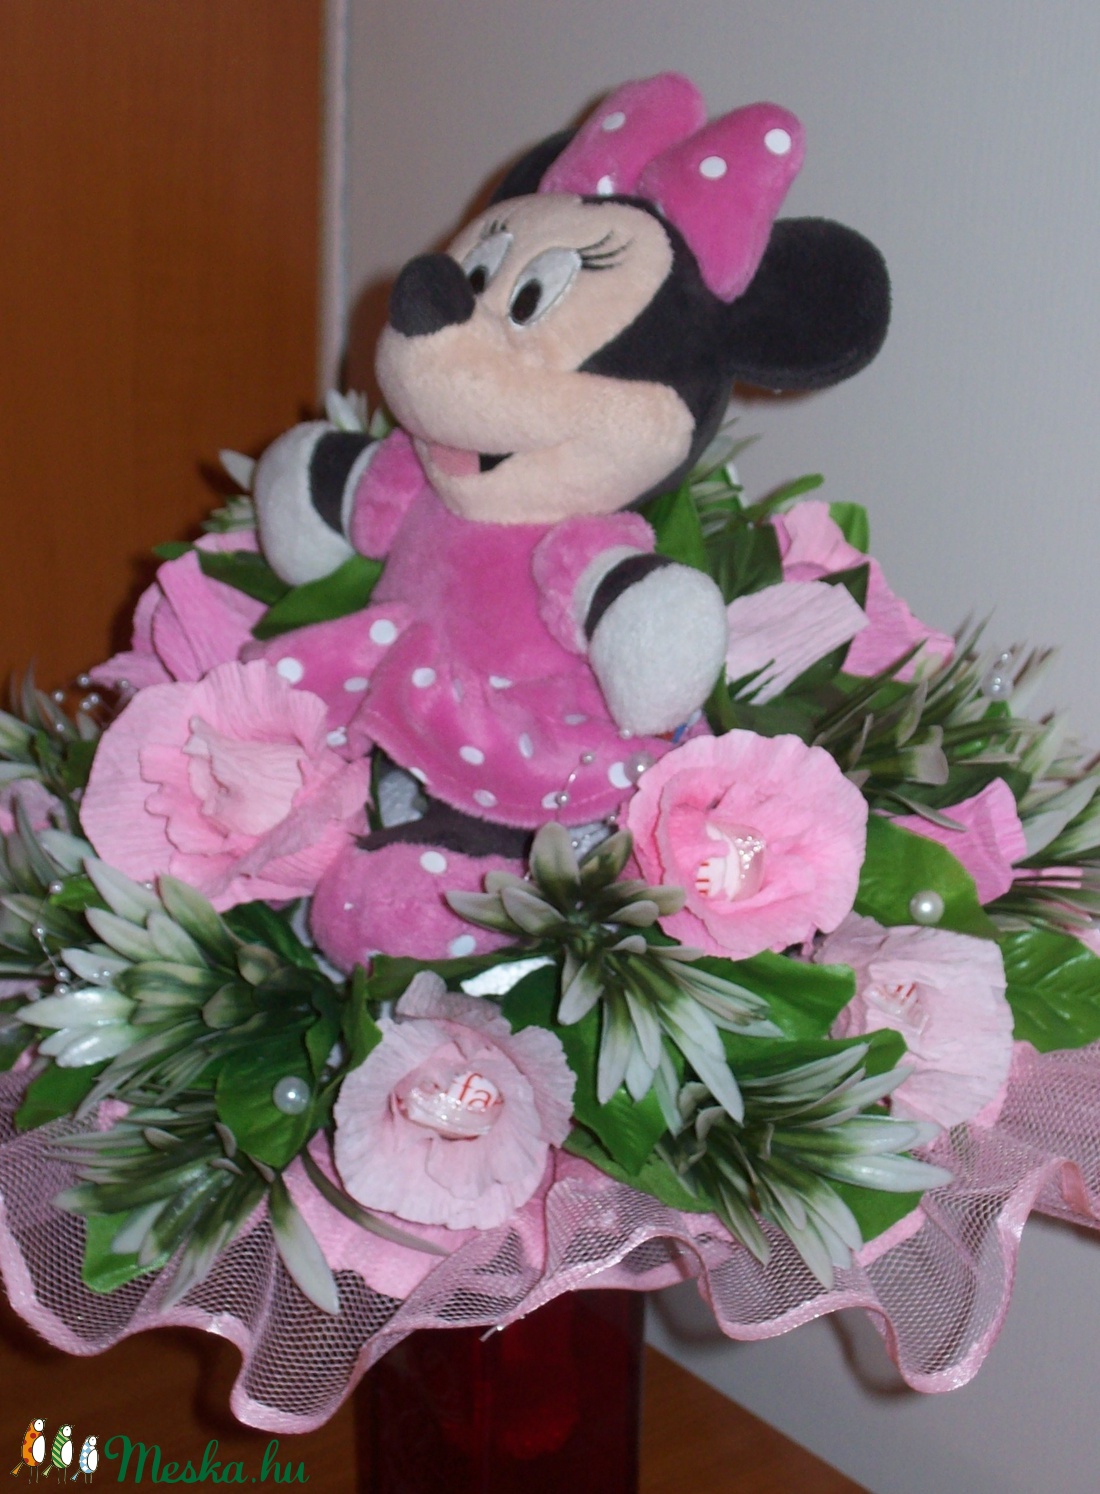 Csokicsokor- rózsaszín Minnie egeres -  - Meska.hu